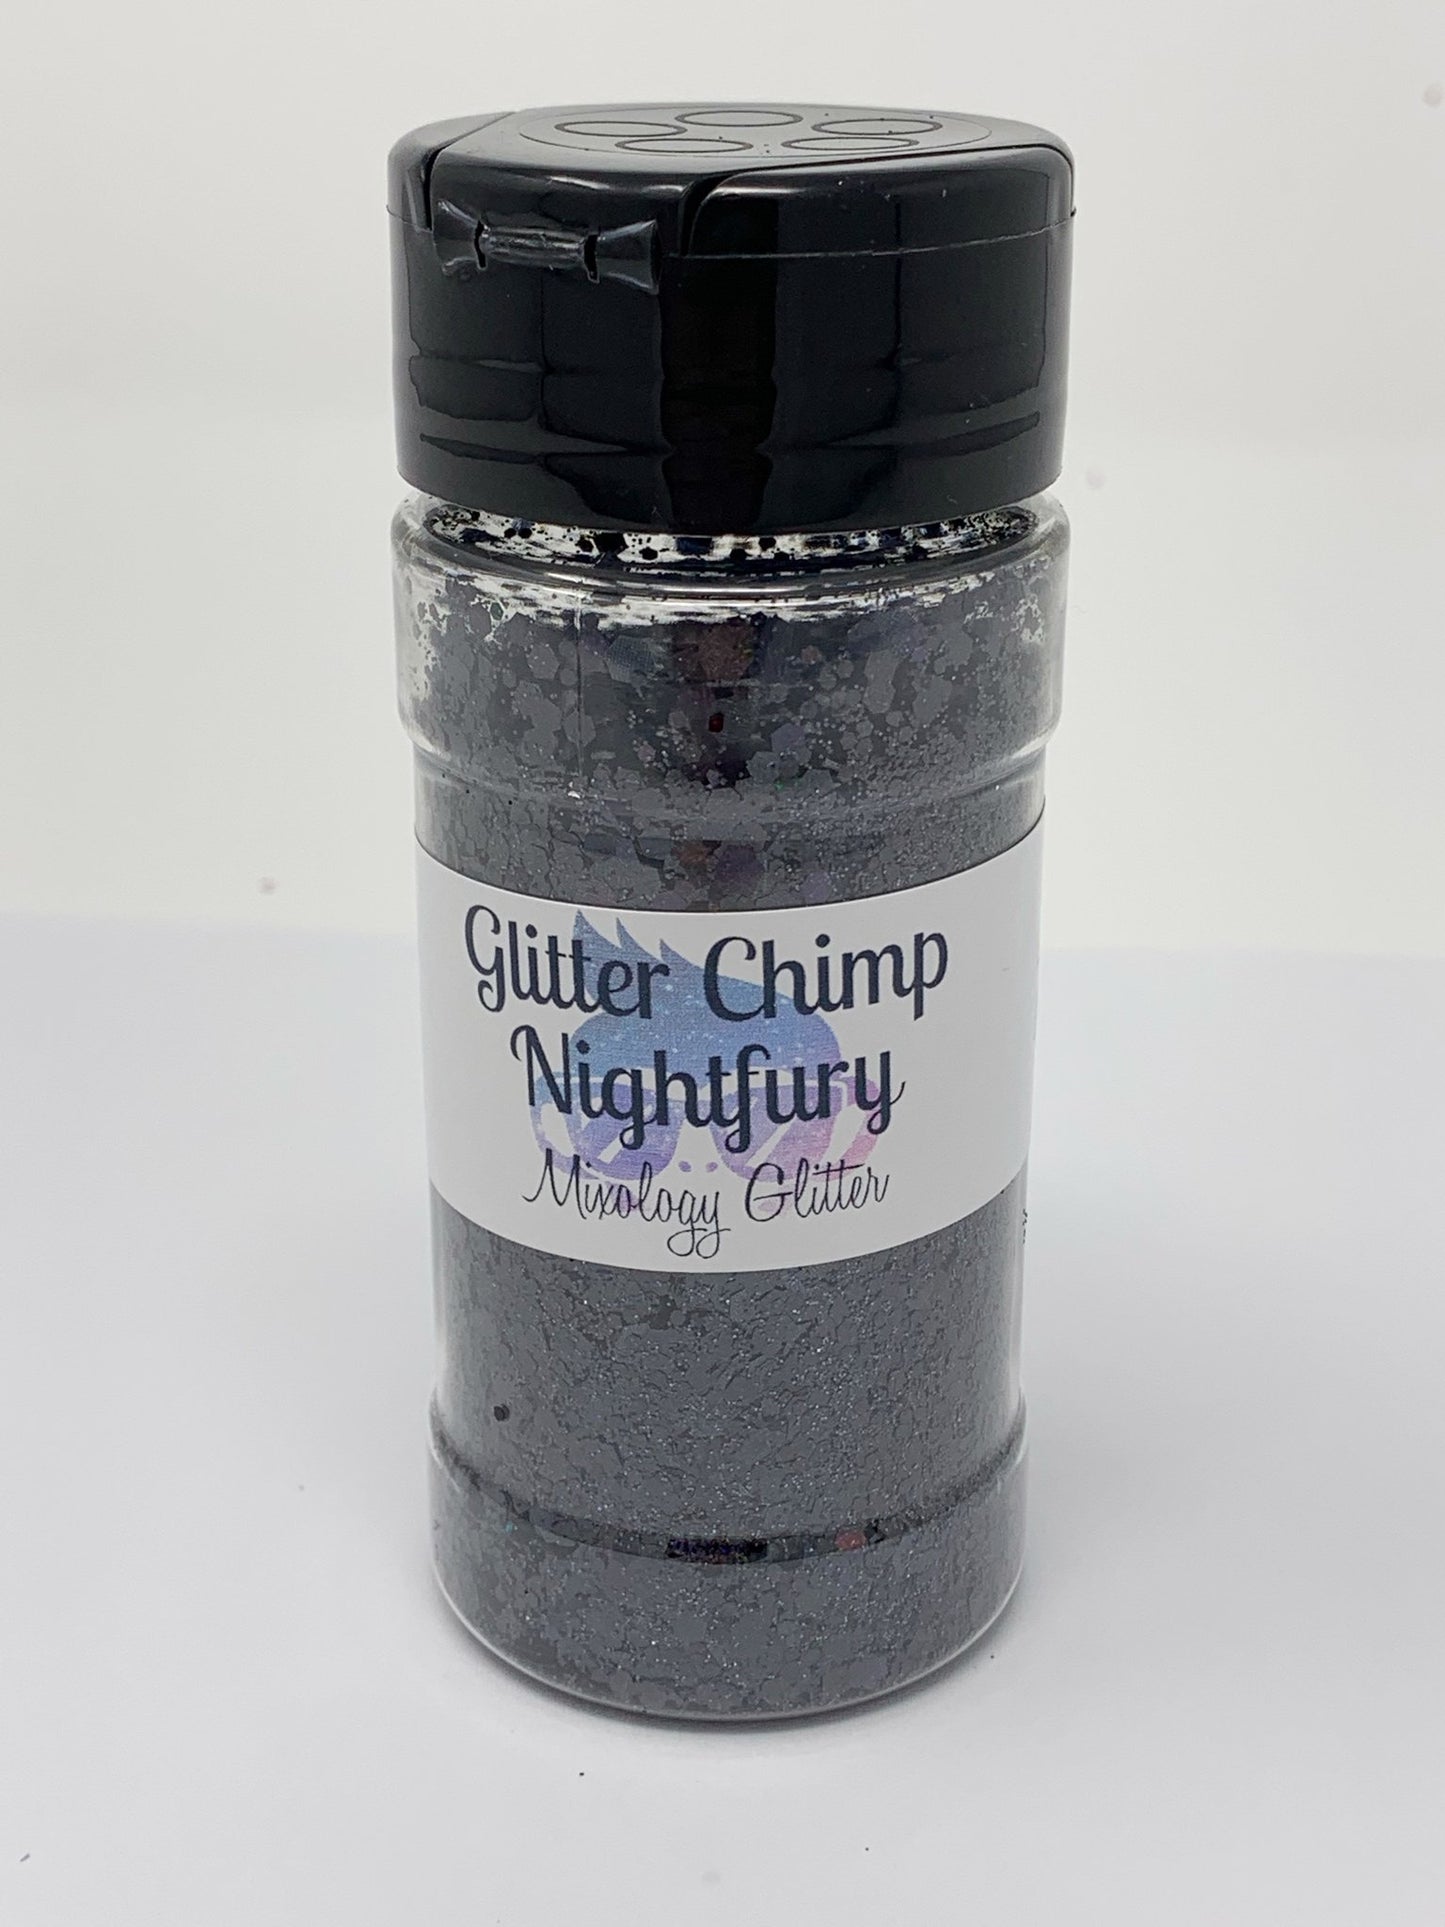 Glitter Chimp  Nightfury Mixology Glitter CLEARANCE